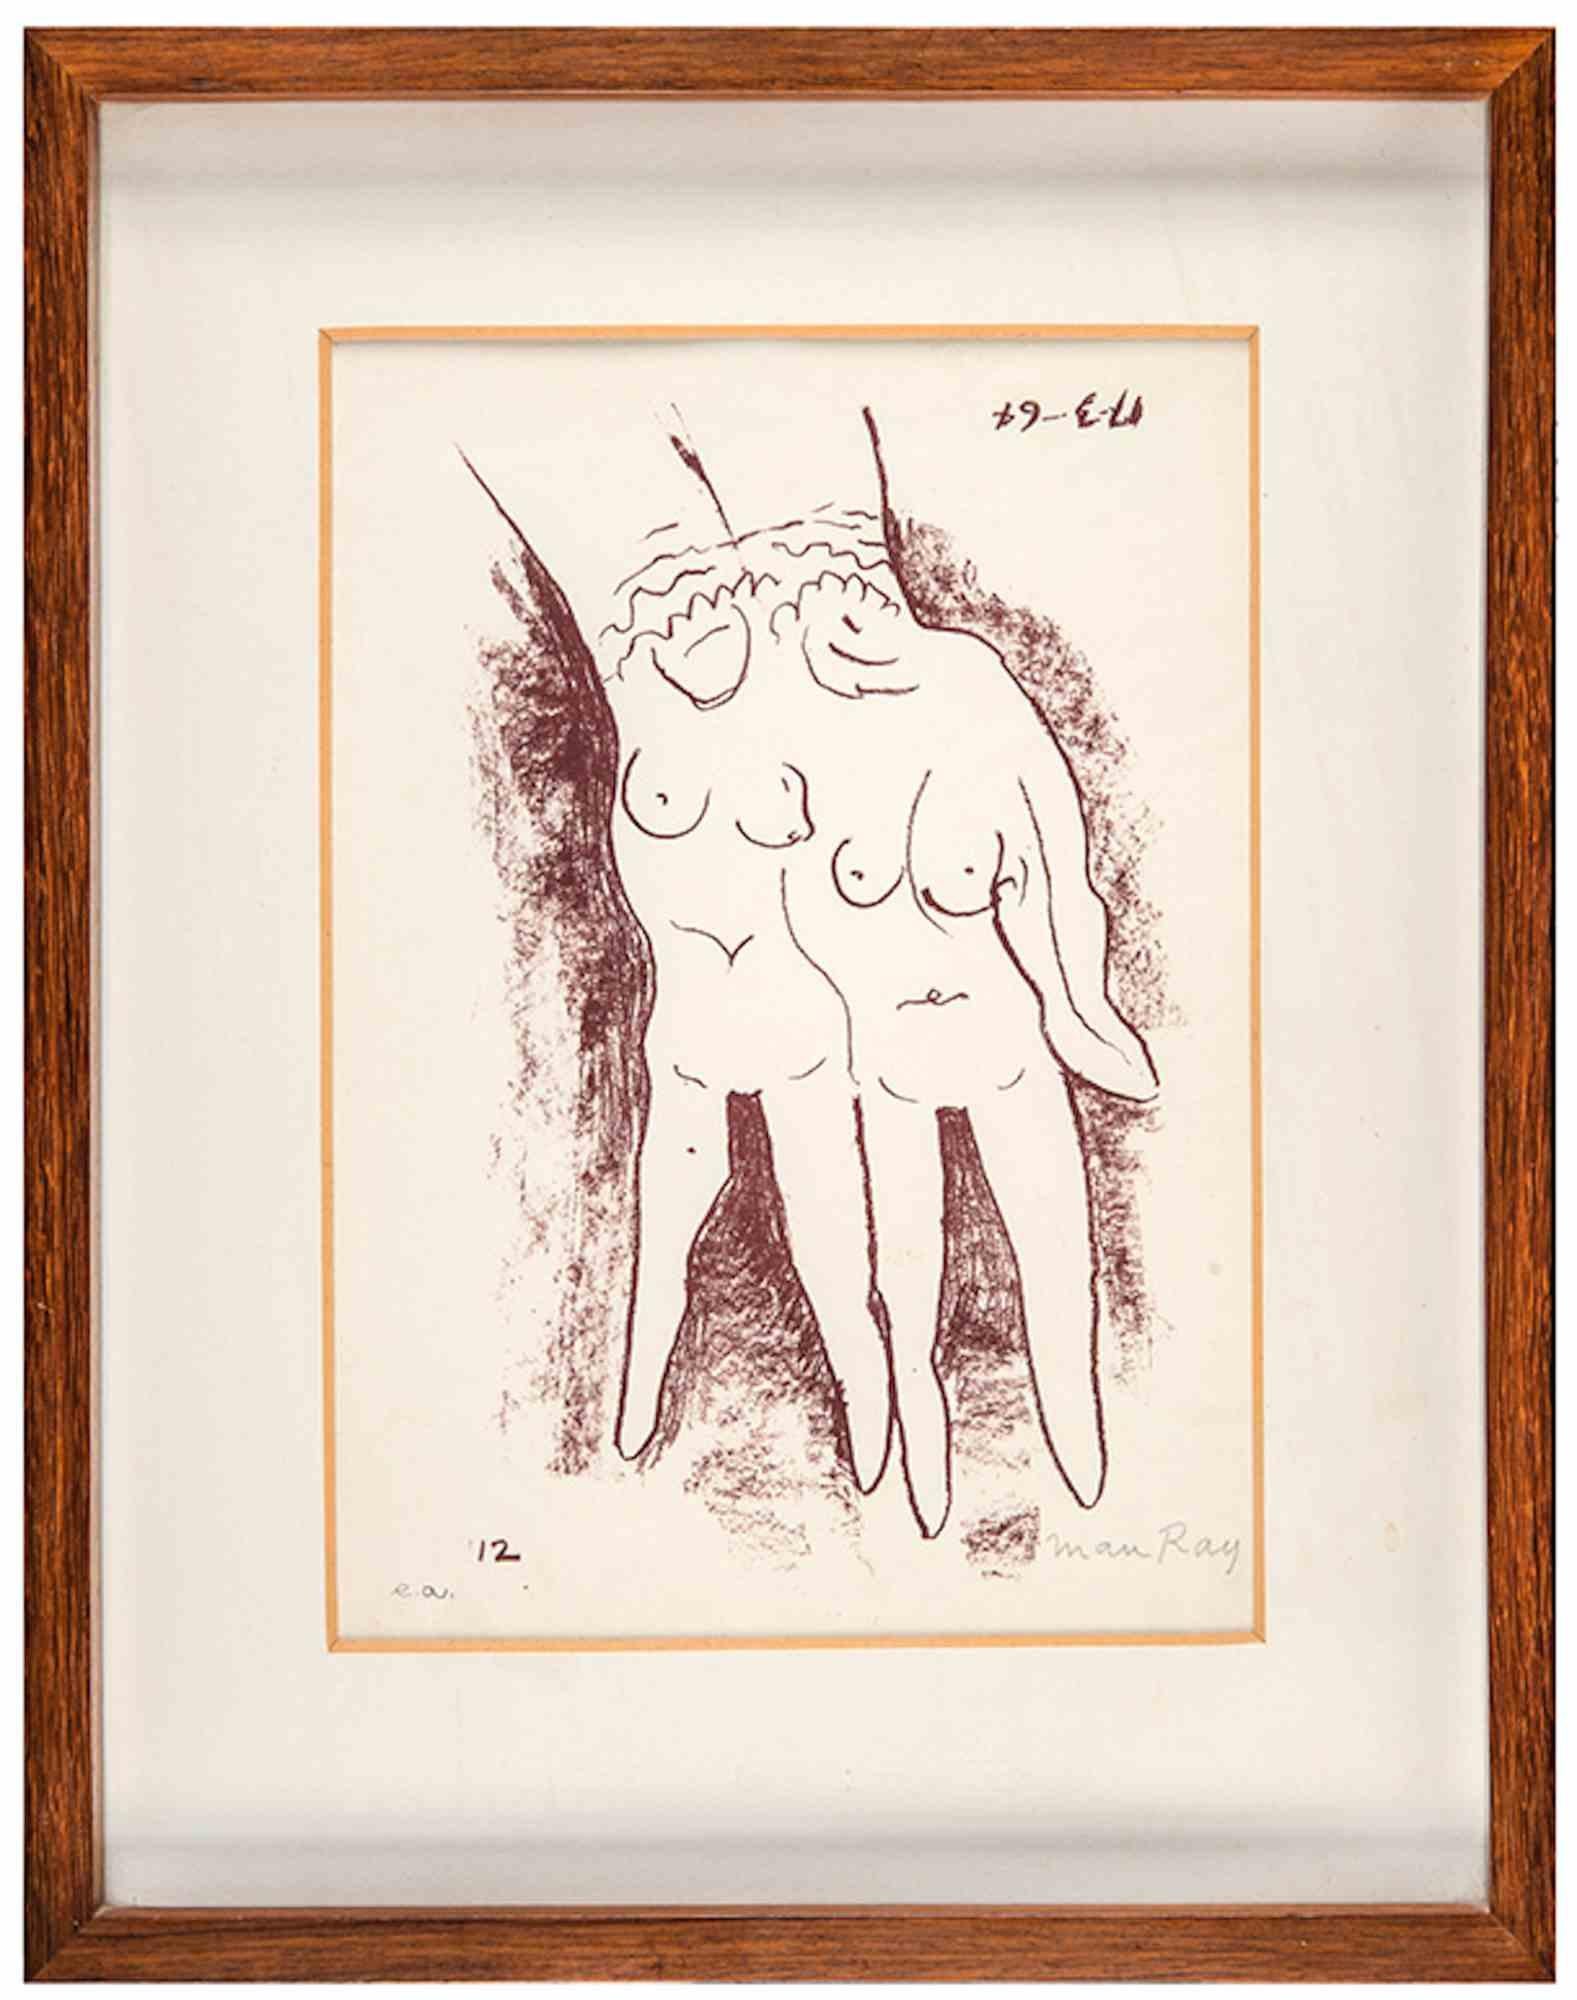 Die Hand – Lithographie von Man Ray – 1964